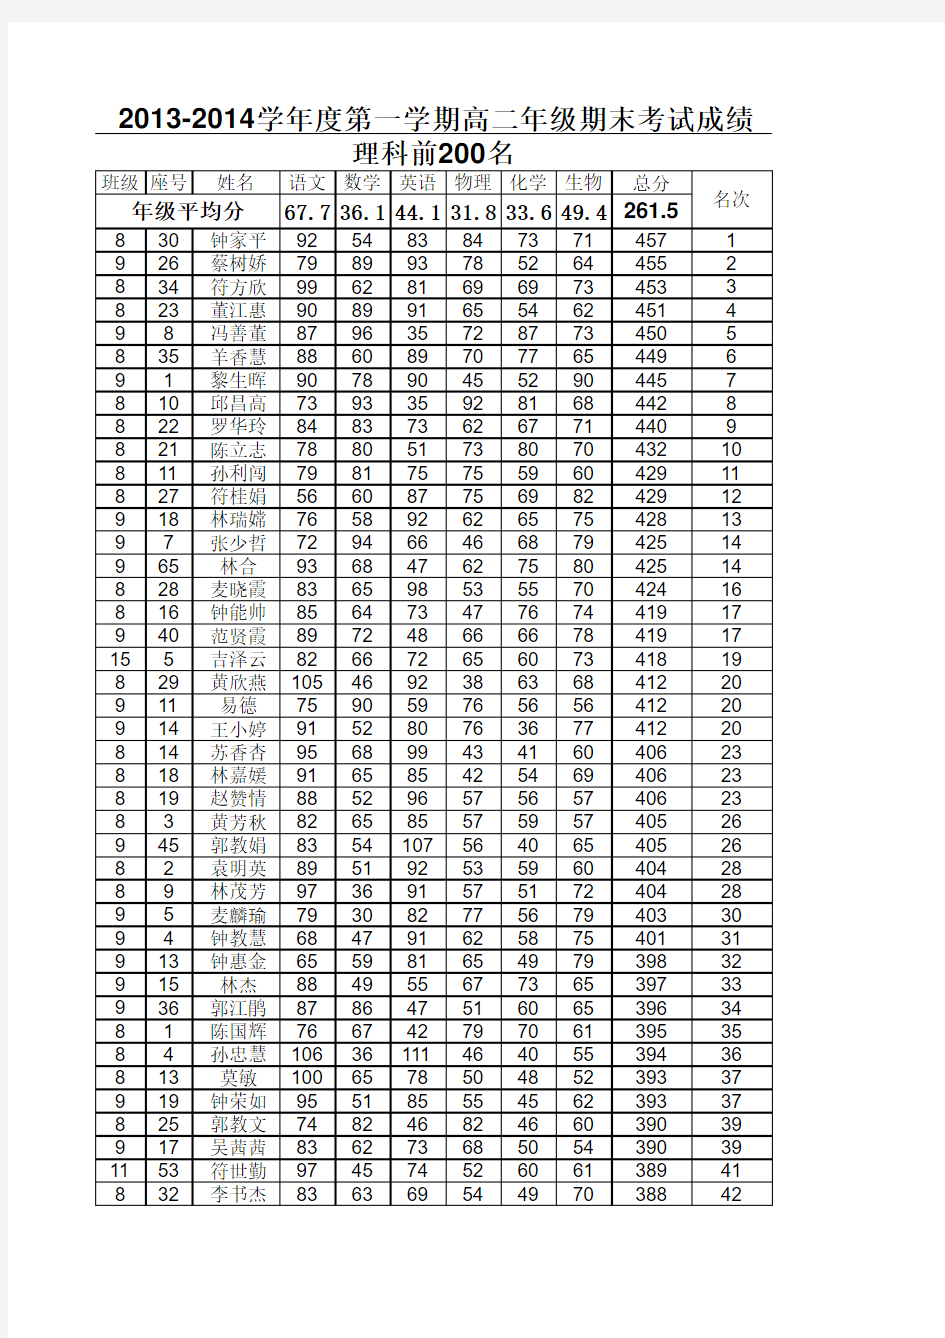 期末考试成绩登记表(高二第1学期)